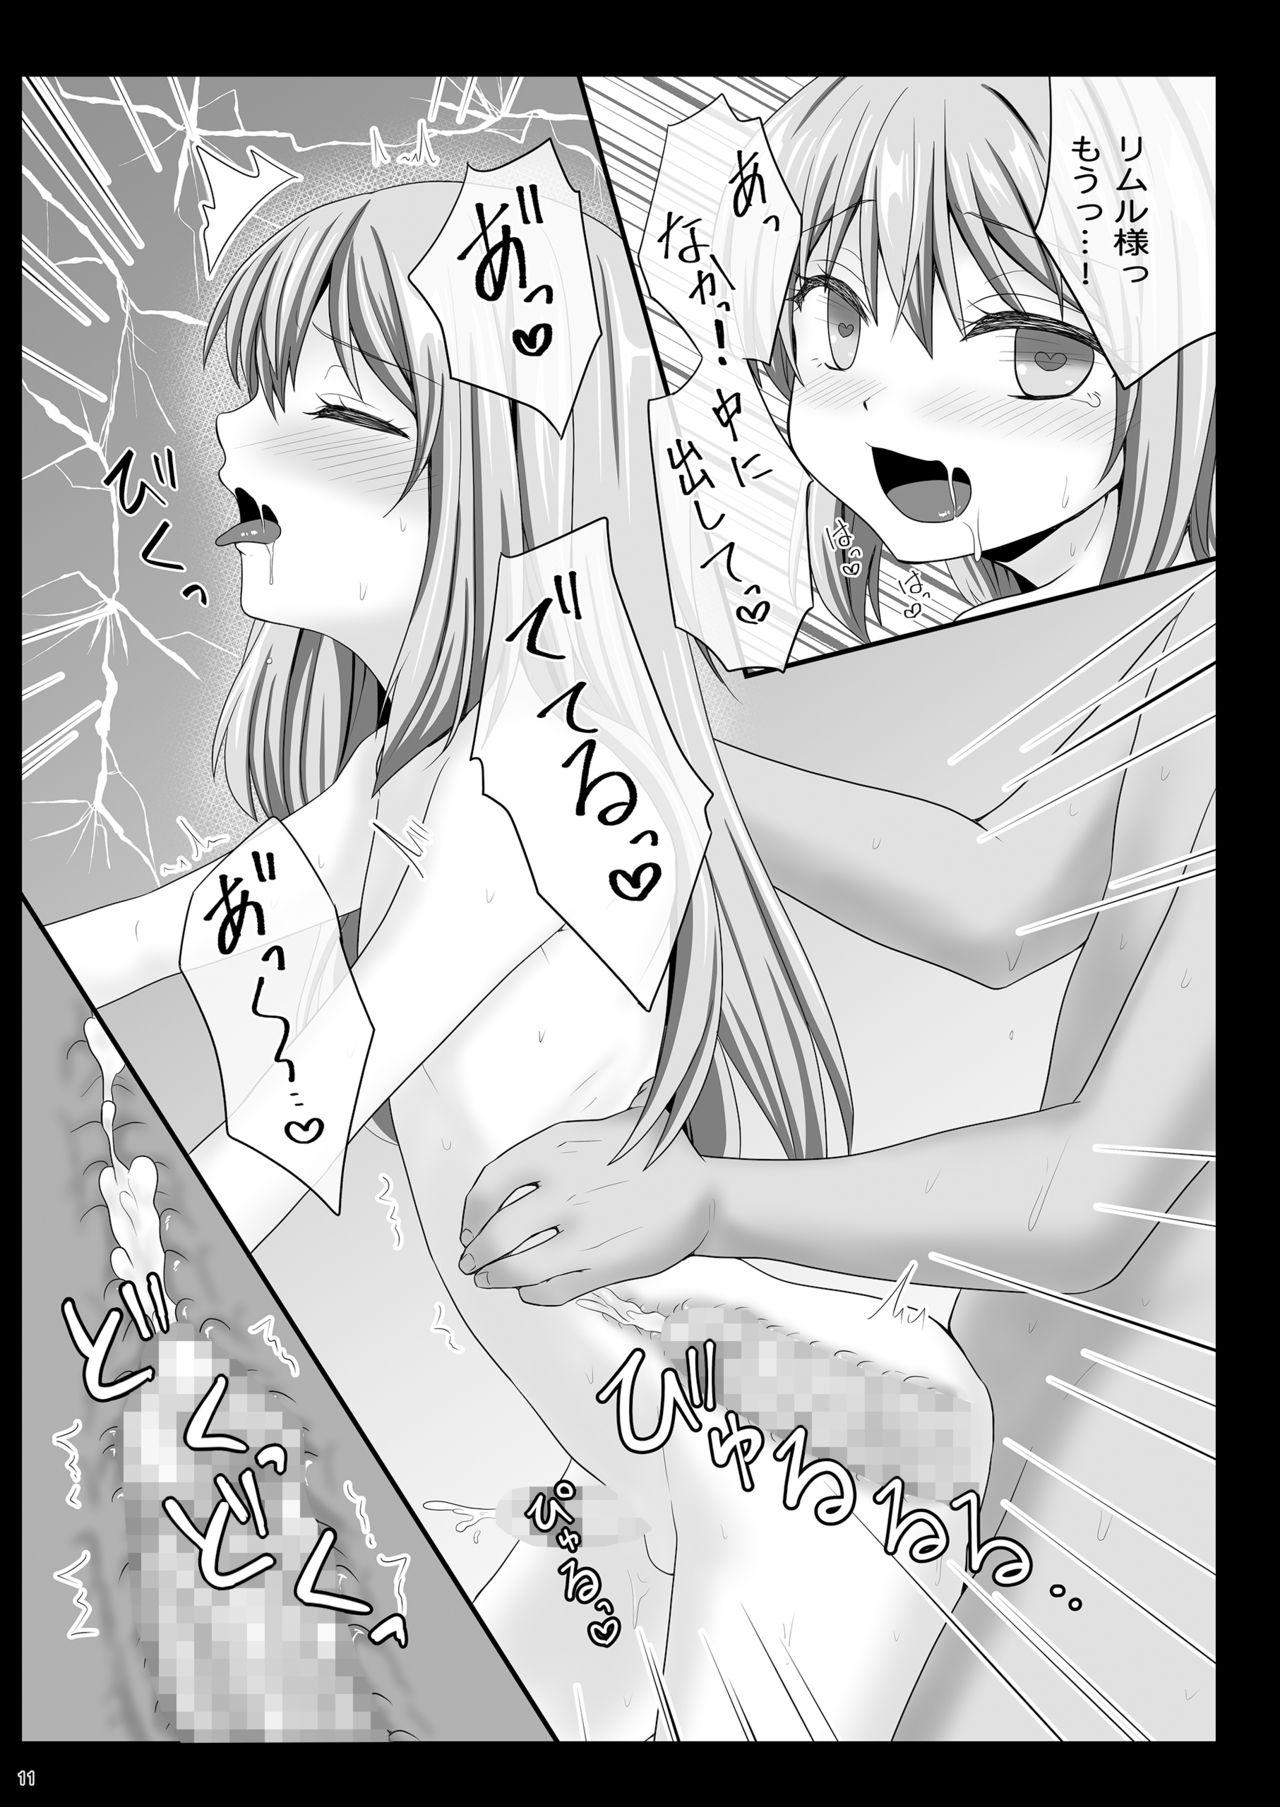 Tranny Sex Etchina Rimuru-sama No Matome - Tensei shitara slime datta ken Free Rough Sex Porn - Page 10